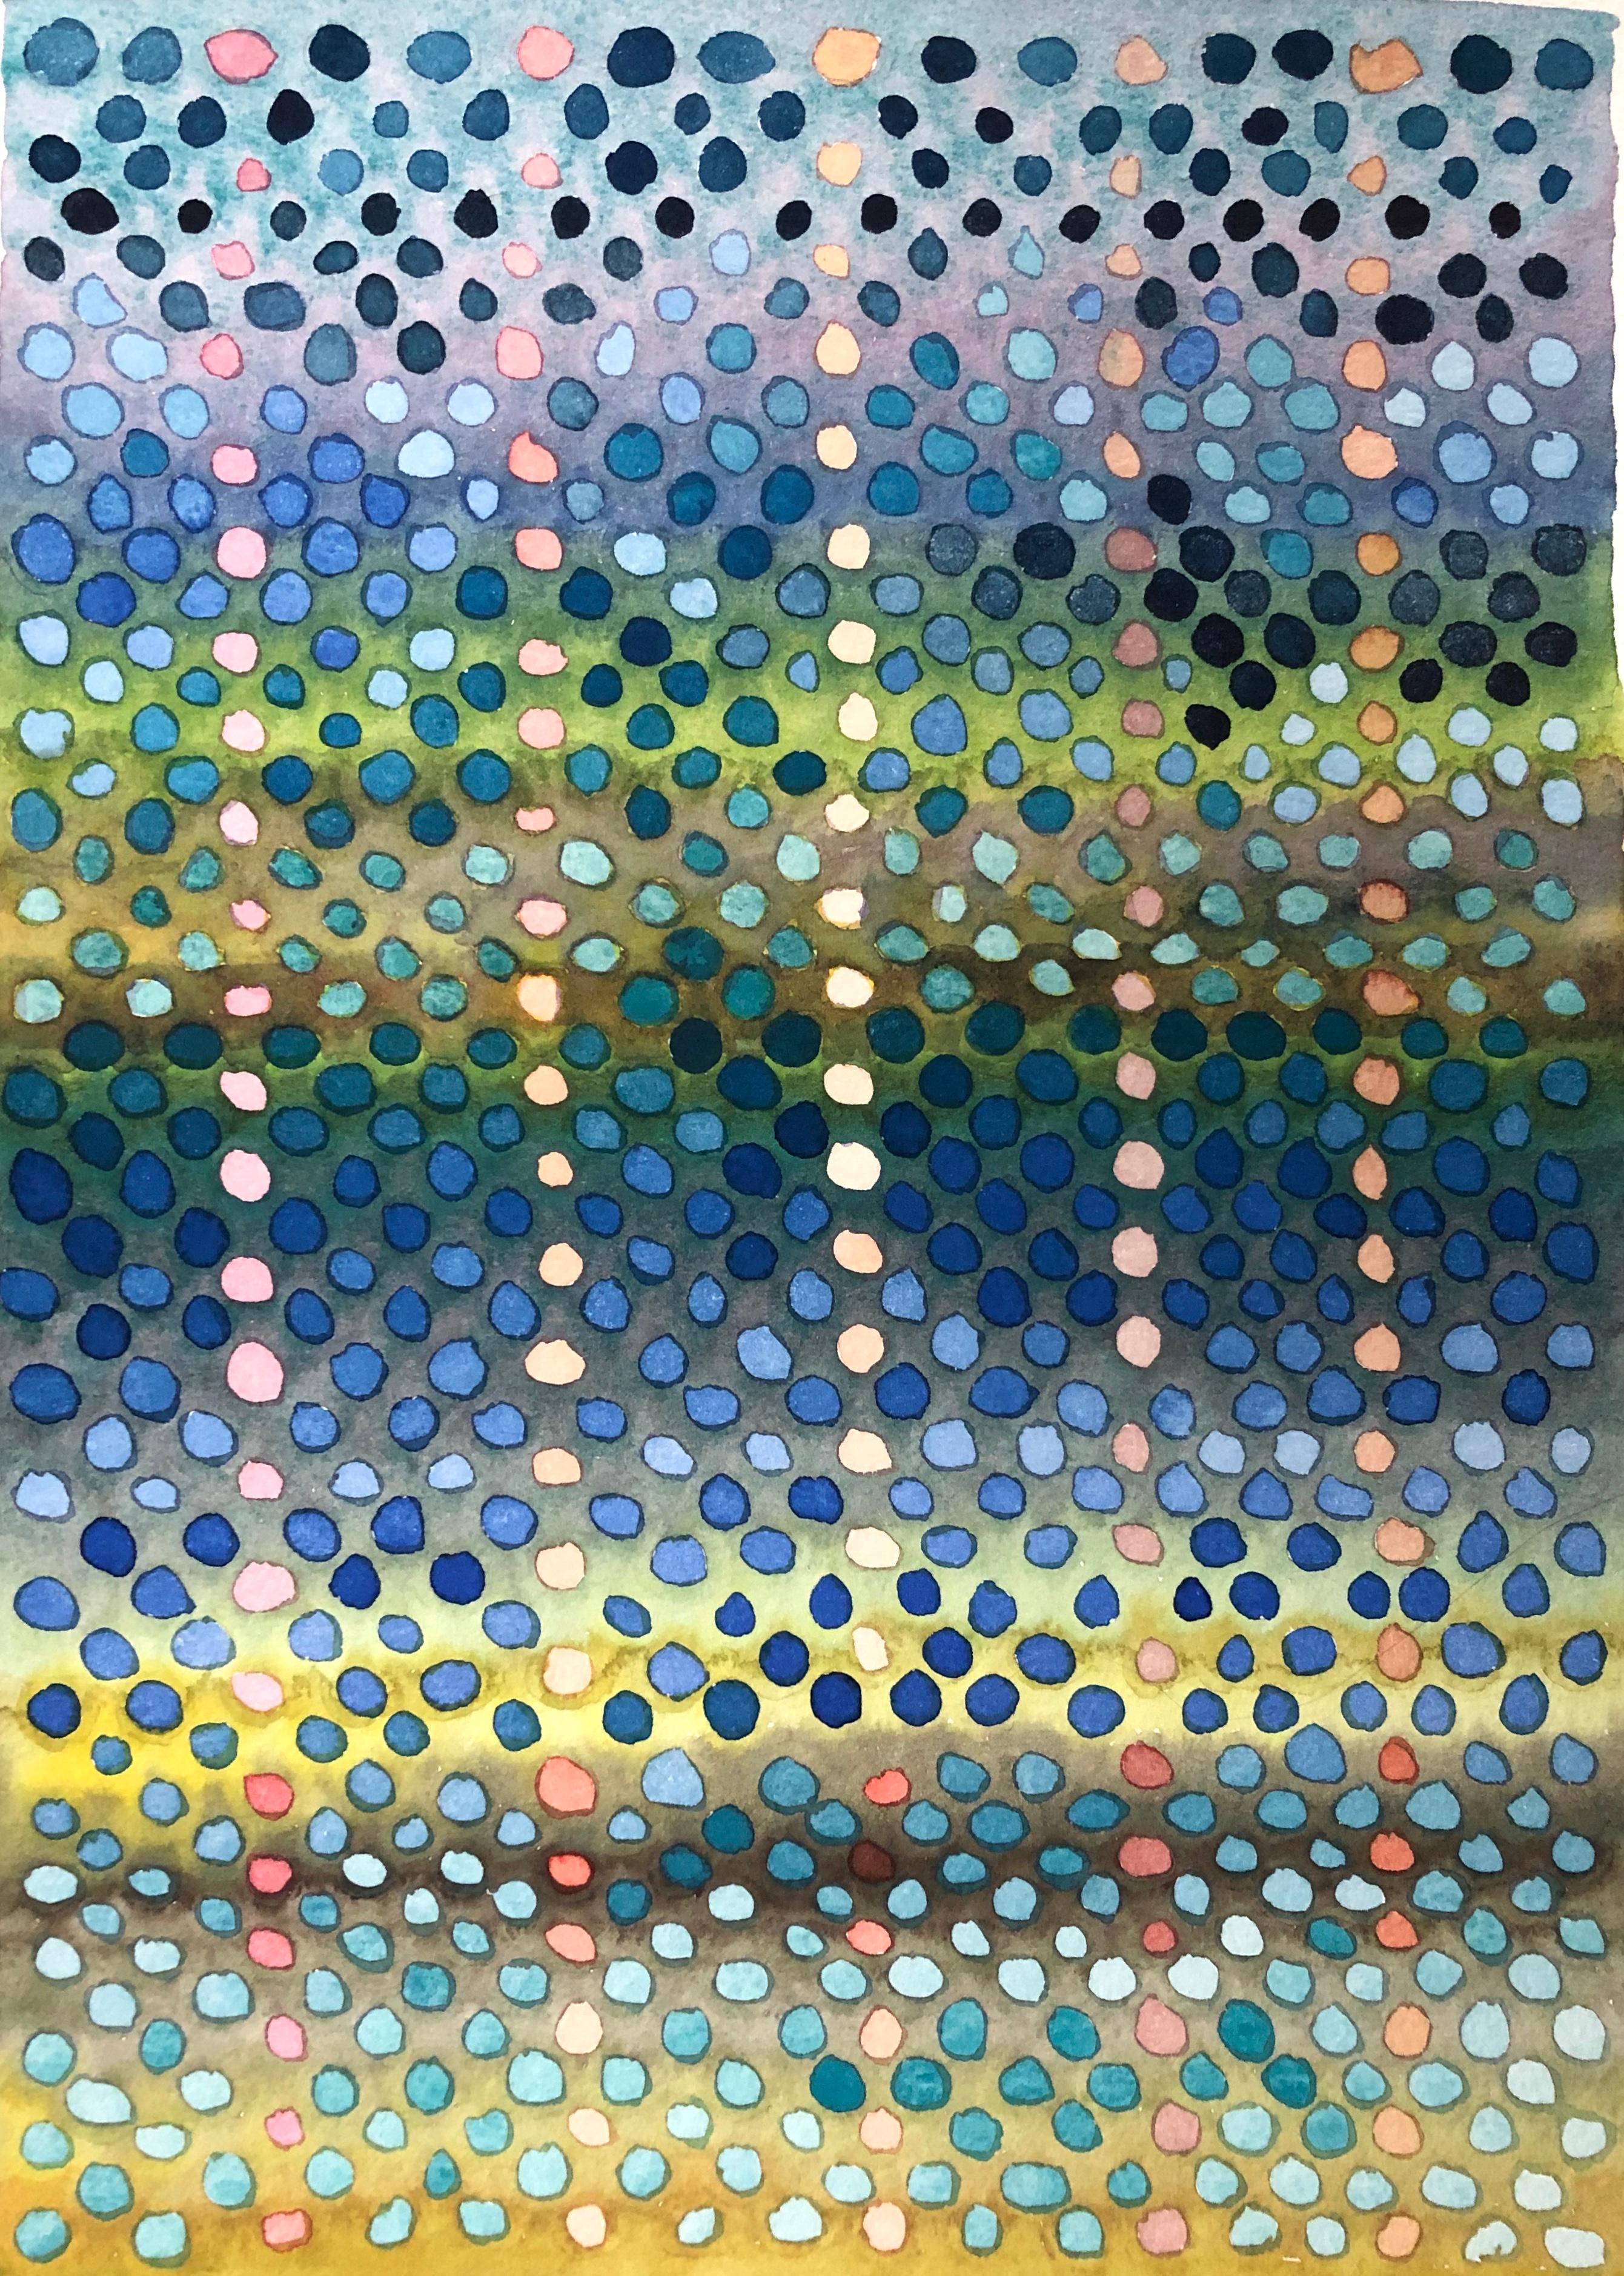 Fleur Thesmar Landscape Art - "DOT STUDY #6", watercolor, dots, pattern, system, bubble wrap, rain, pond light